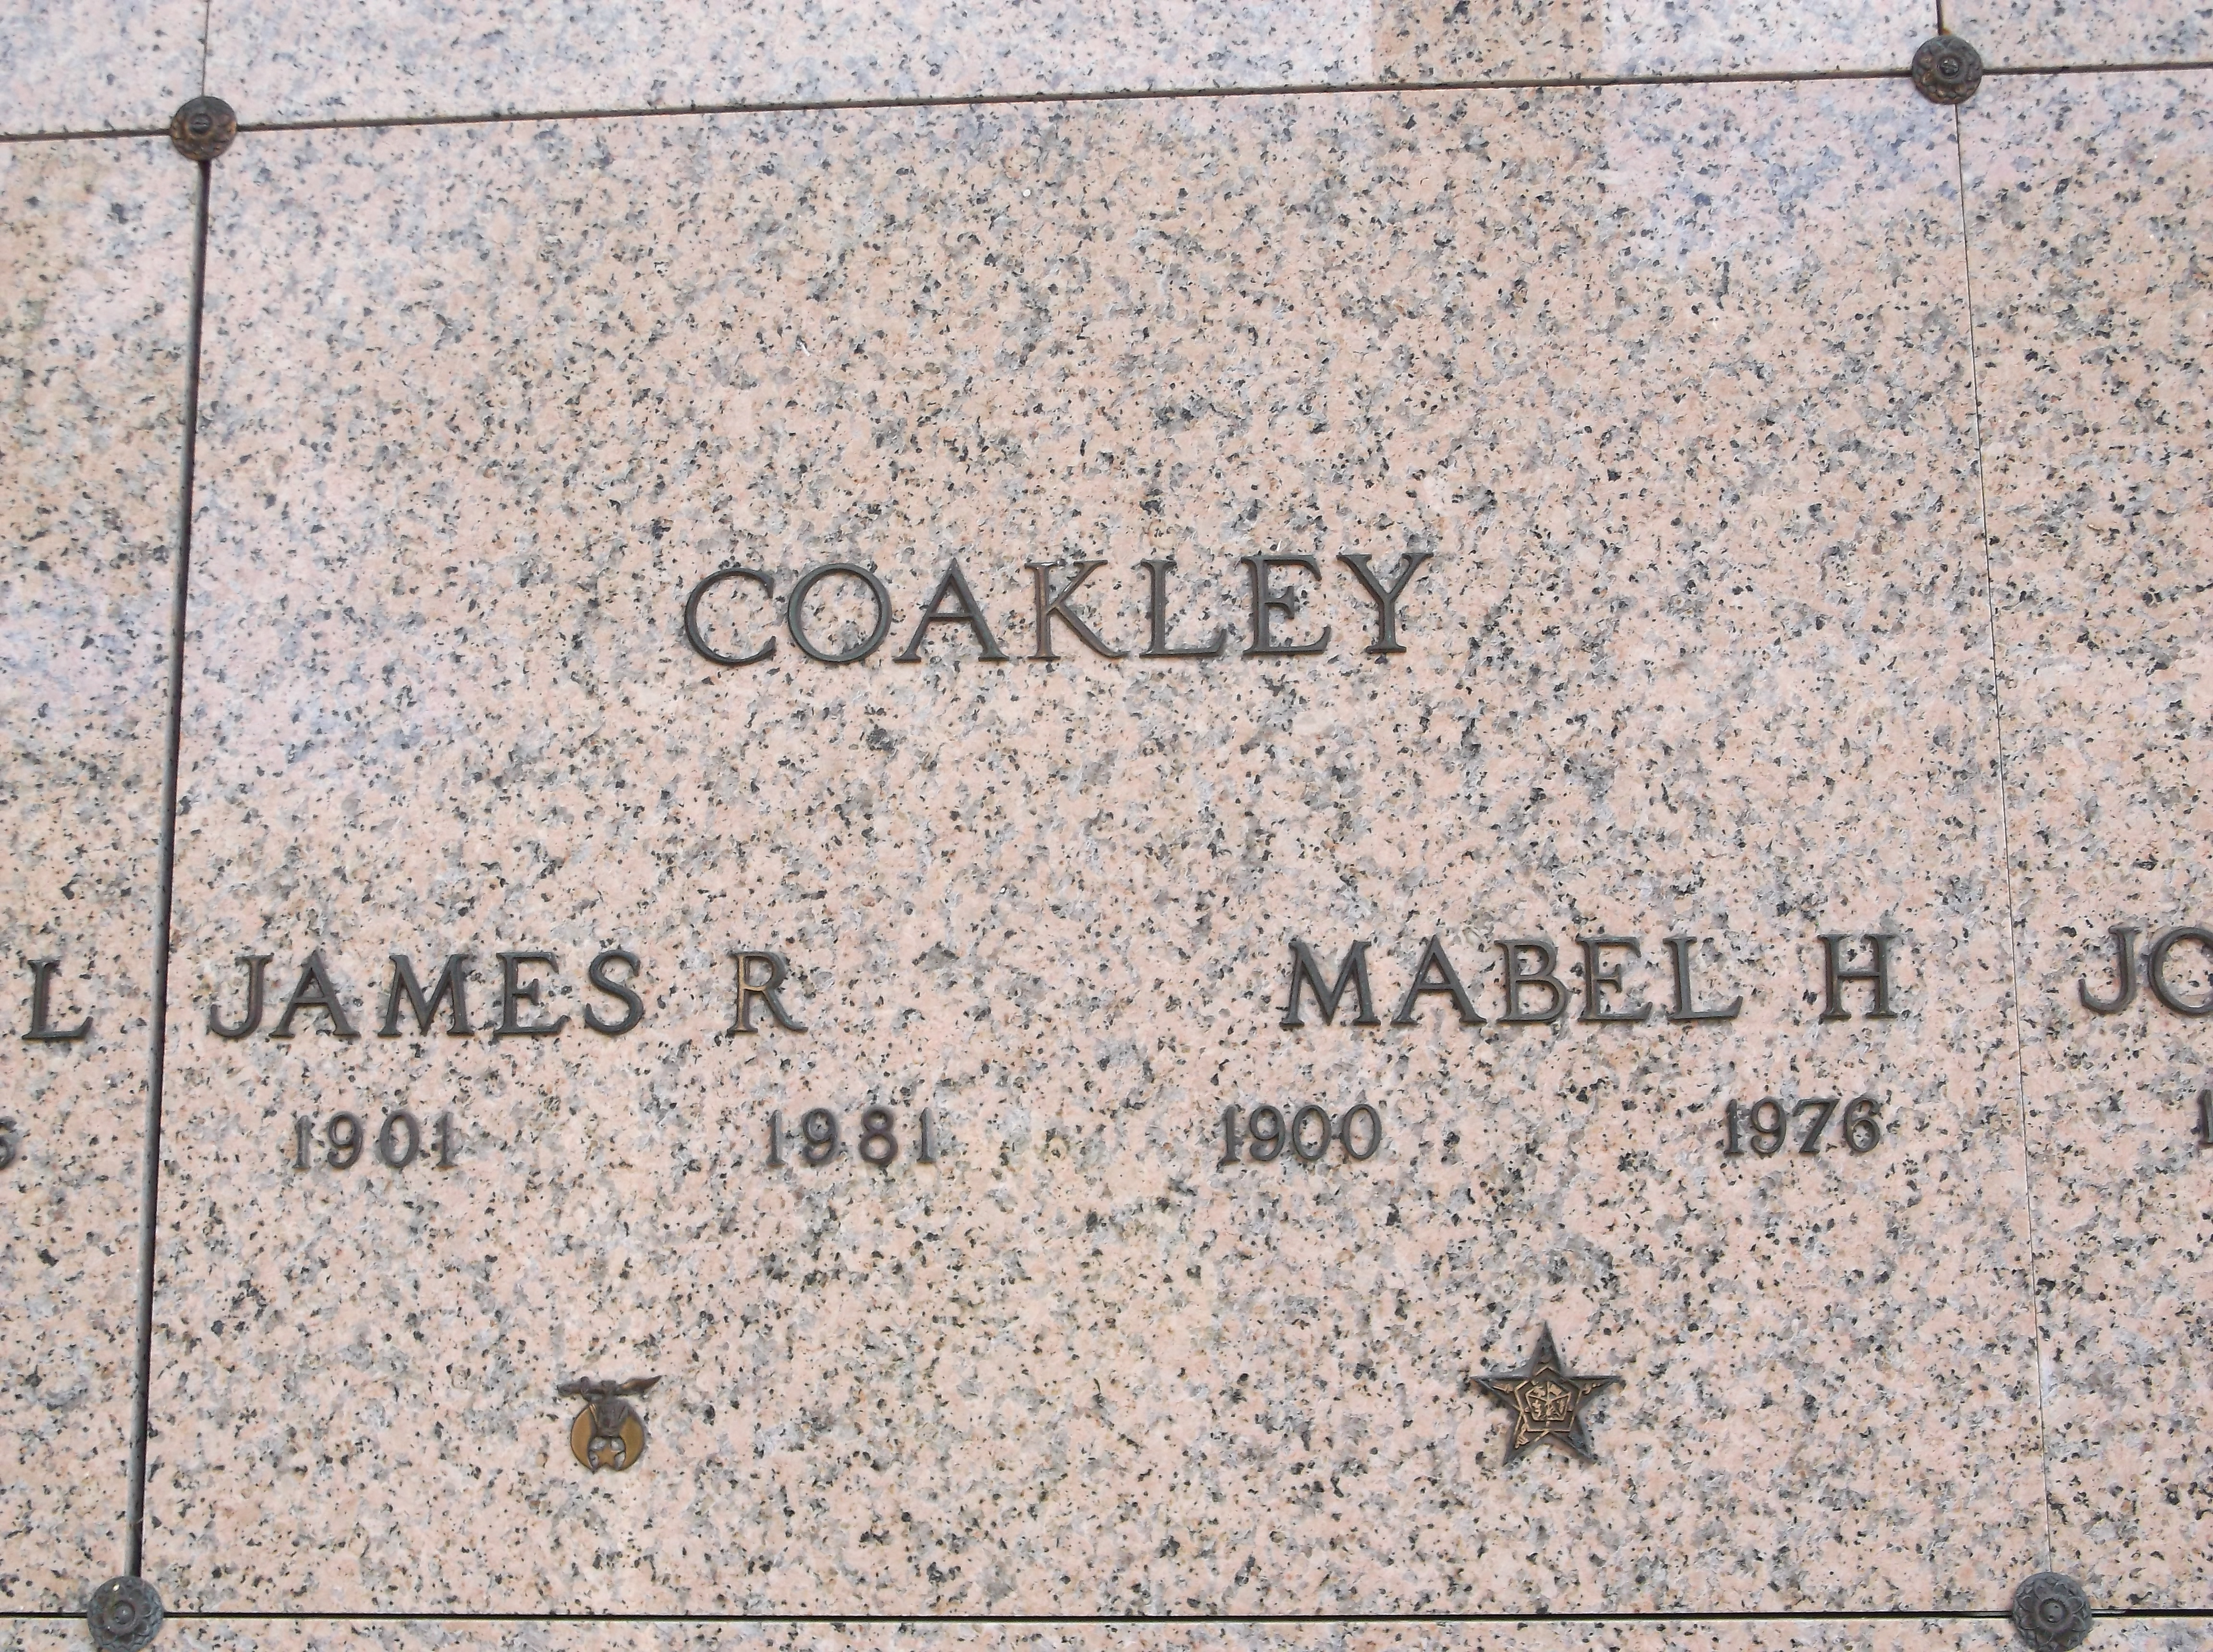 Mabel H Coakley